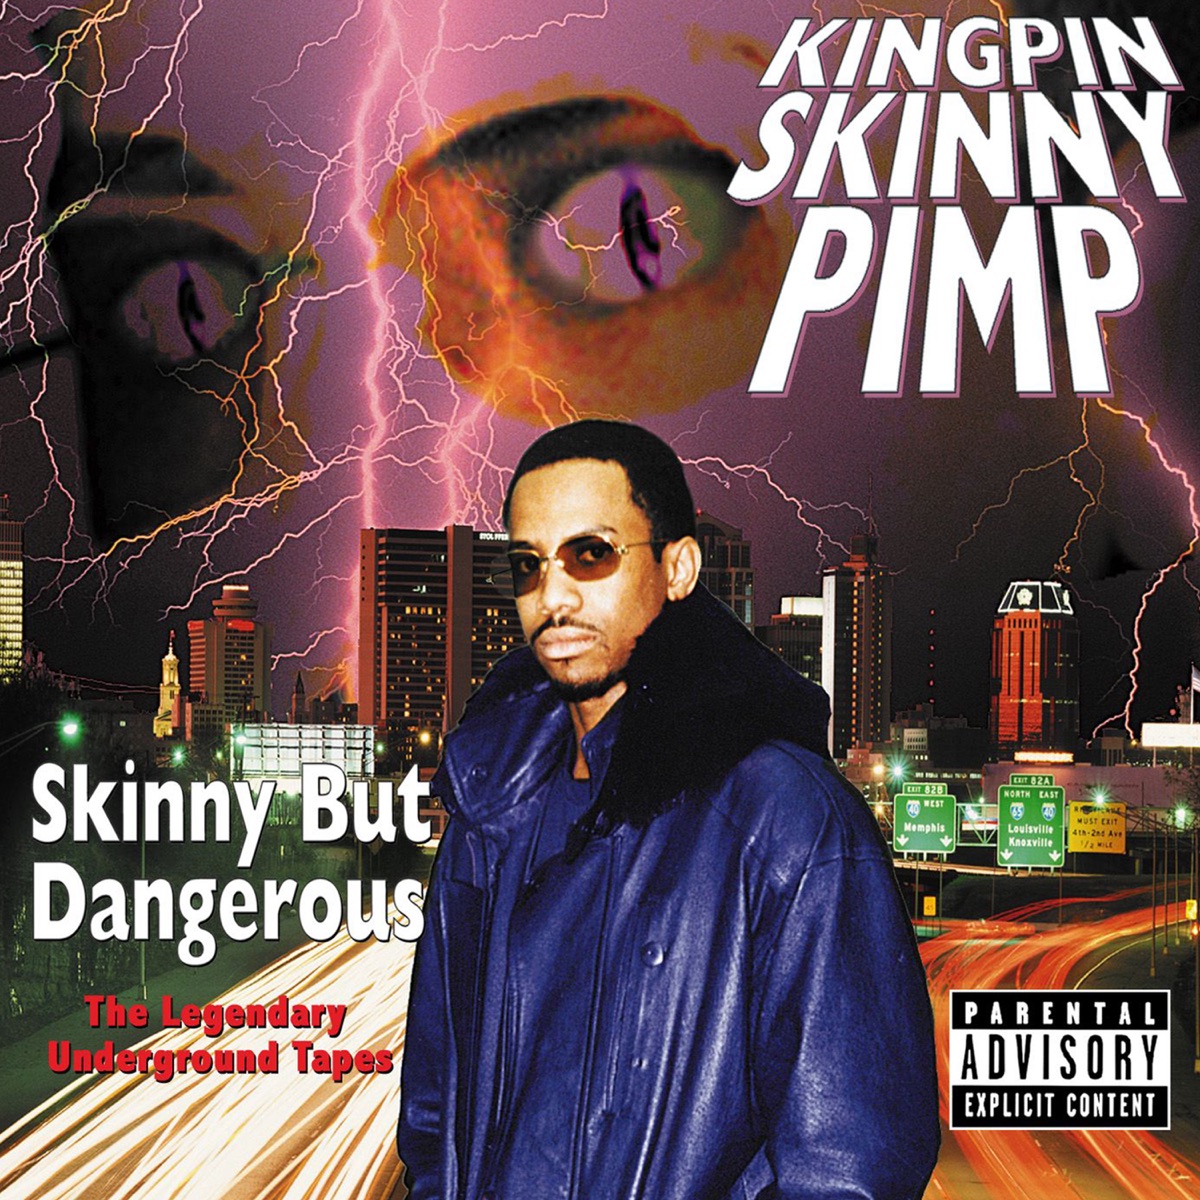 Skinny But Dangerous - Album by Kingpin Skinny Pimp - Apple Music